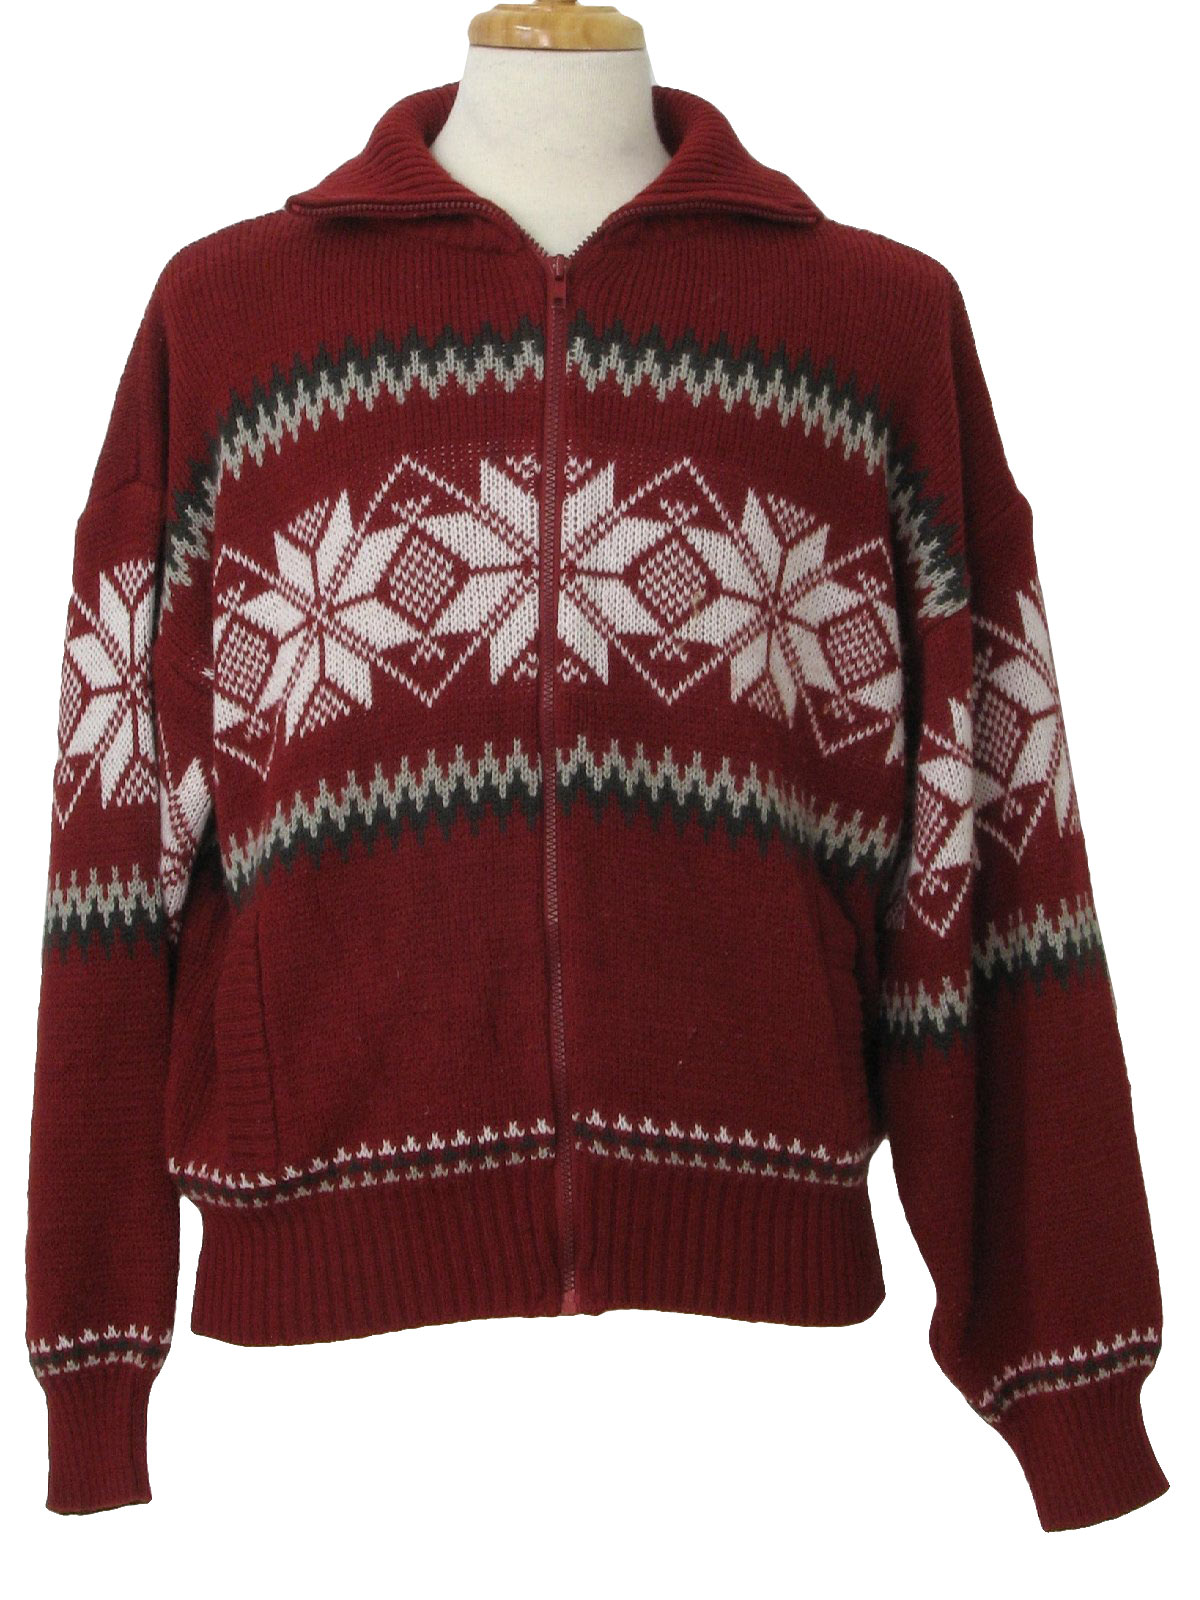 Retro Eighties Sweater: 80s -Scandia Woods- Mens wine, shaded grey and ...